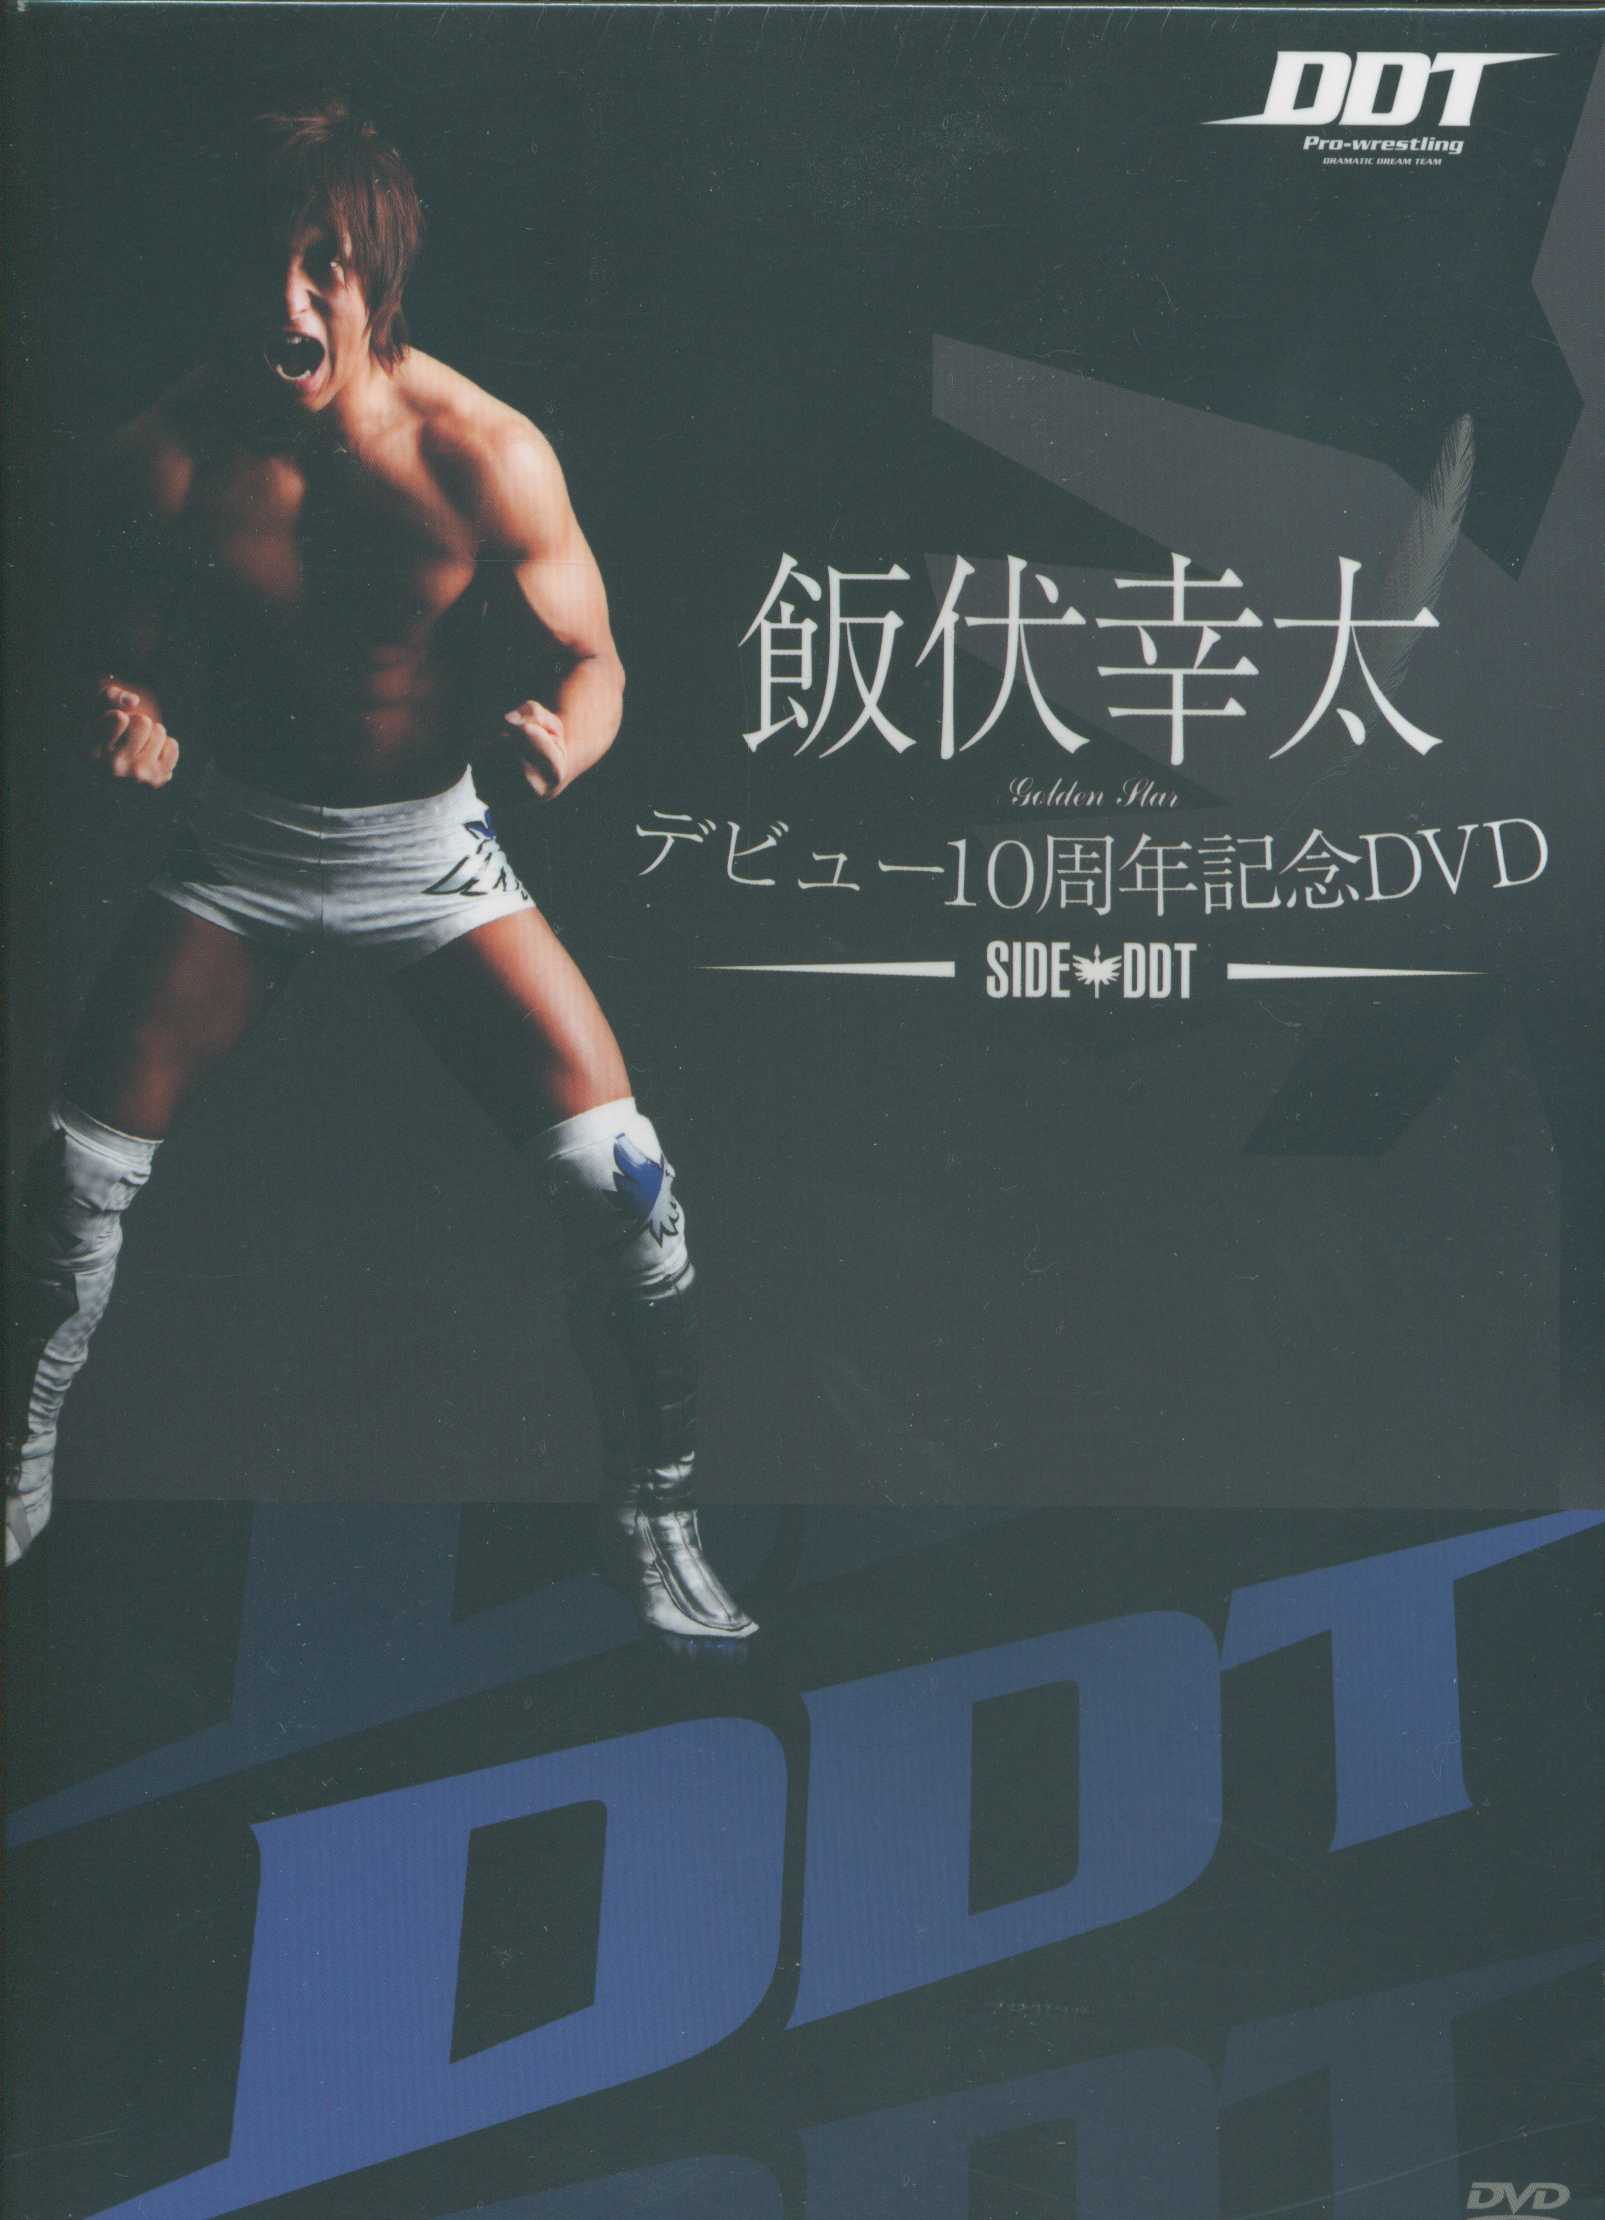 新年特販 ゴールデン⭐︎ラヴァーズ DVD DDT 飯伏幸太 ケニーオメガ 